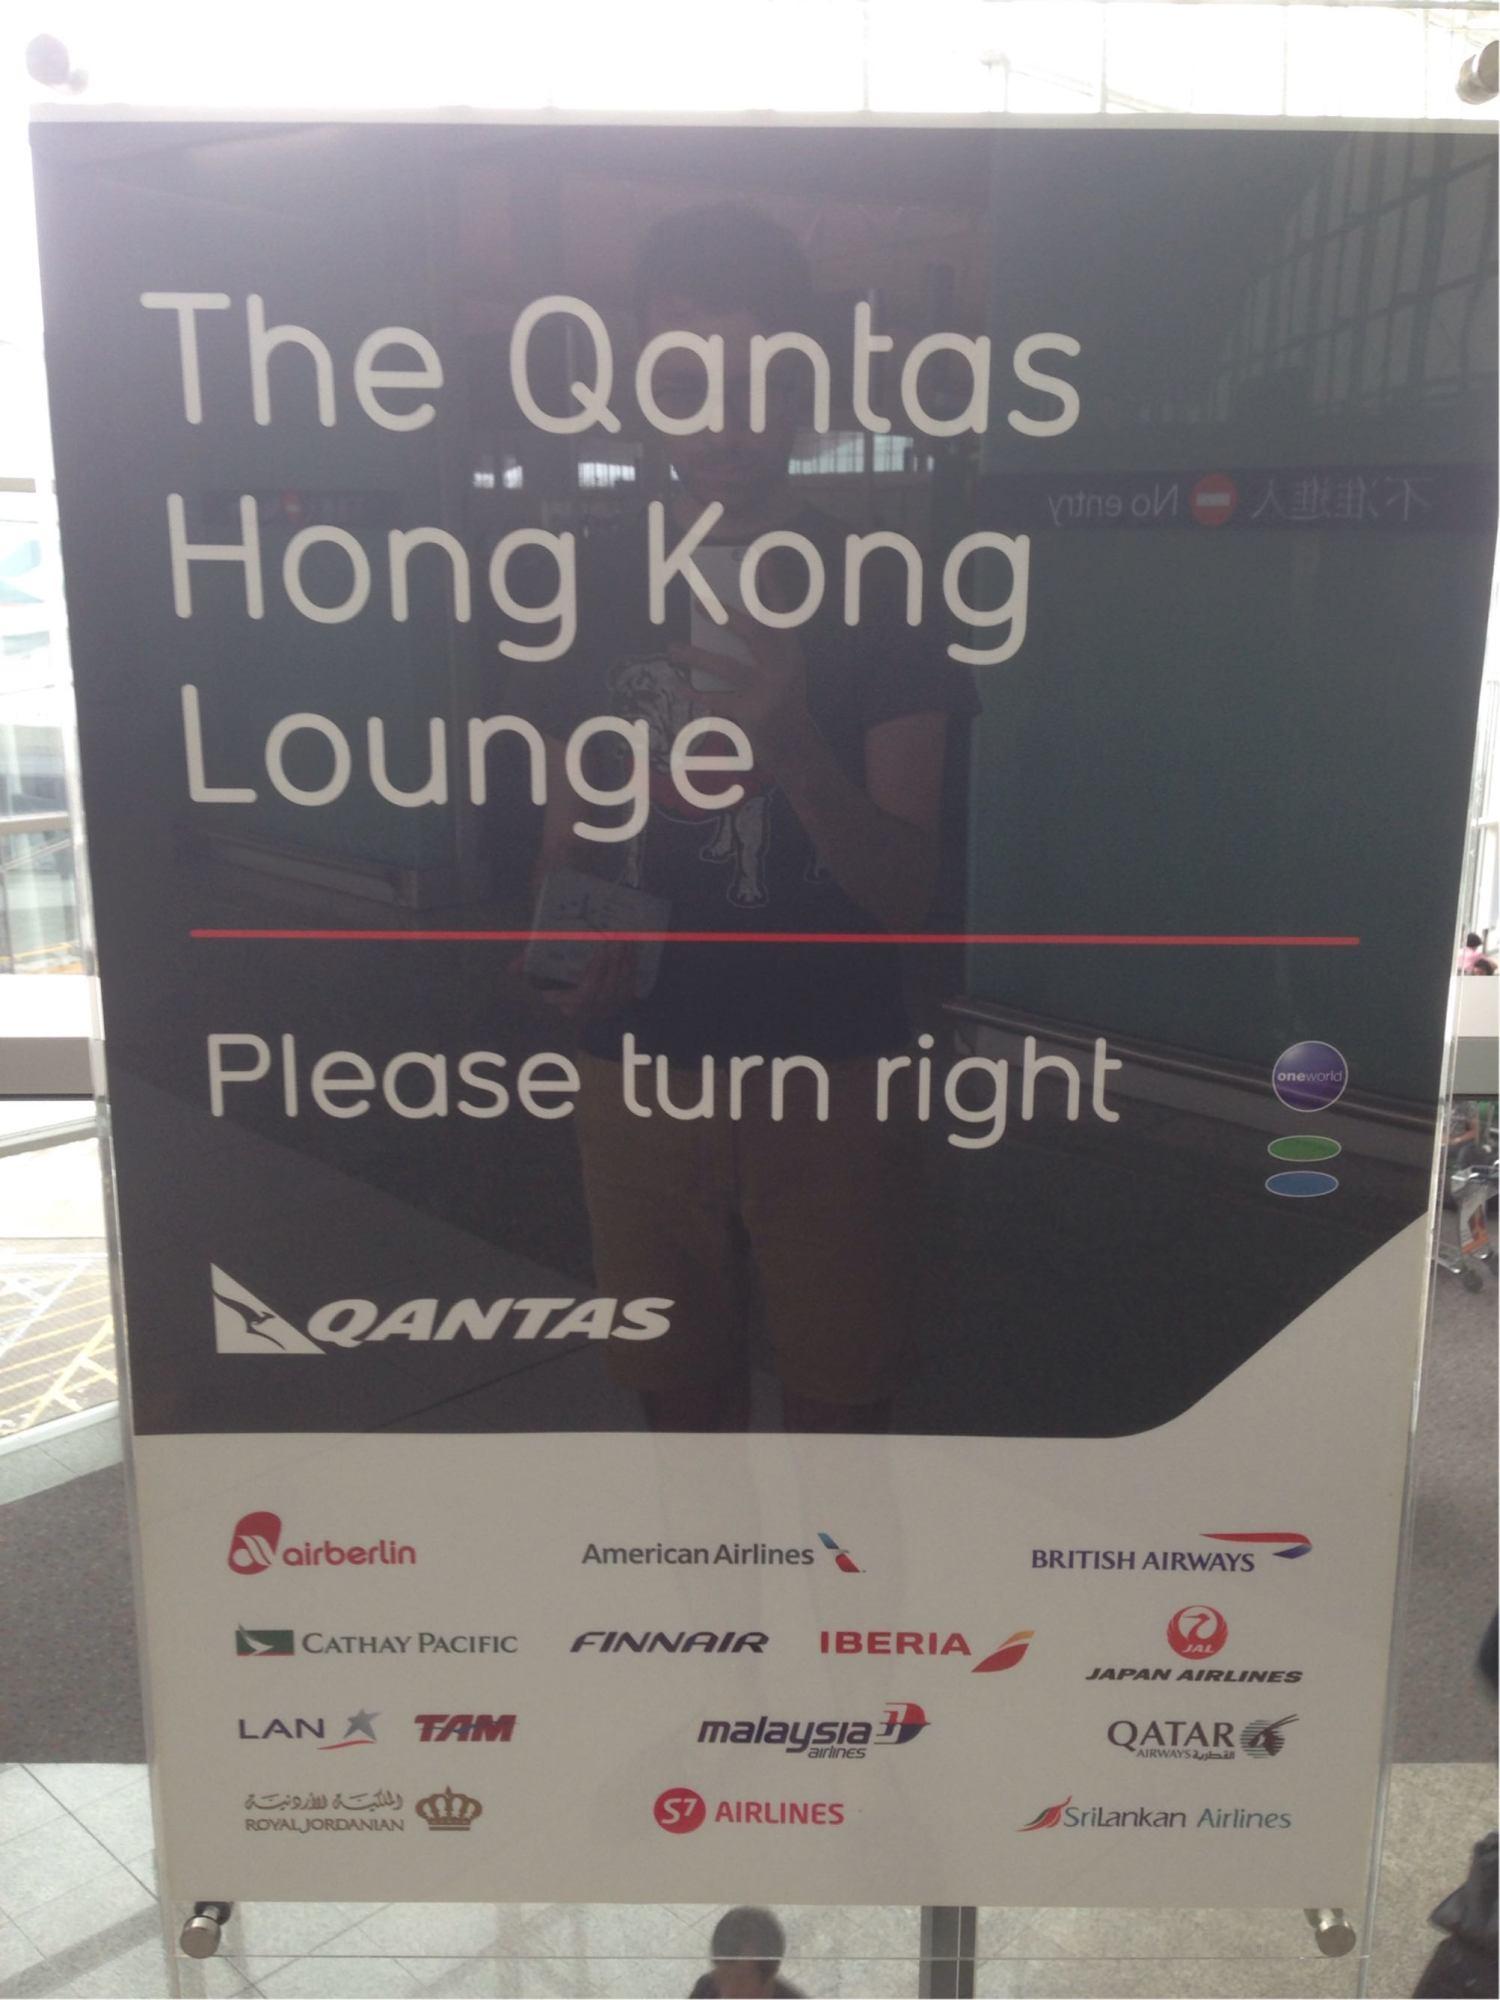 The Qantas Hong Kong Lounge image 55 of 99